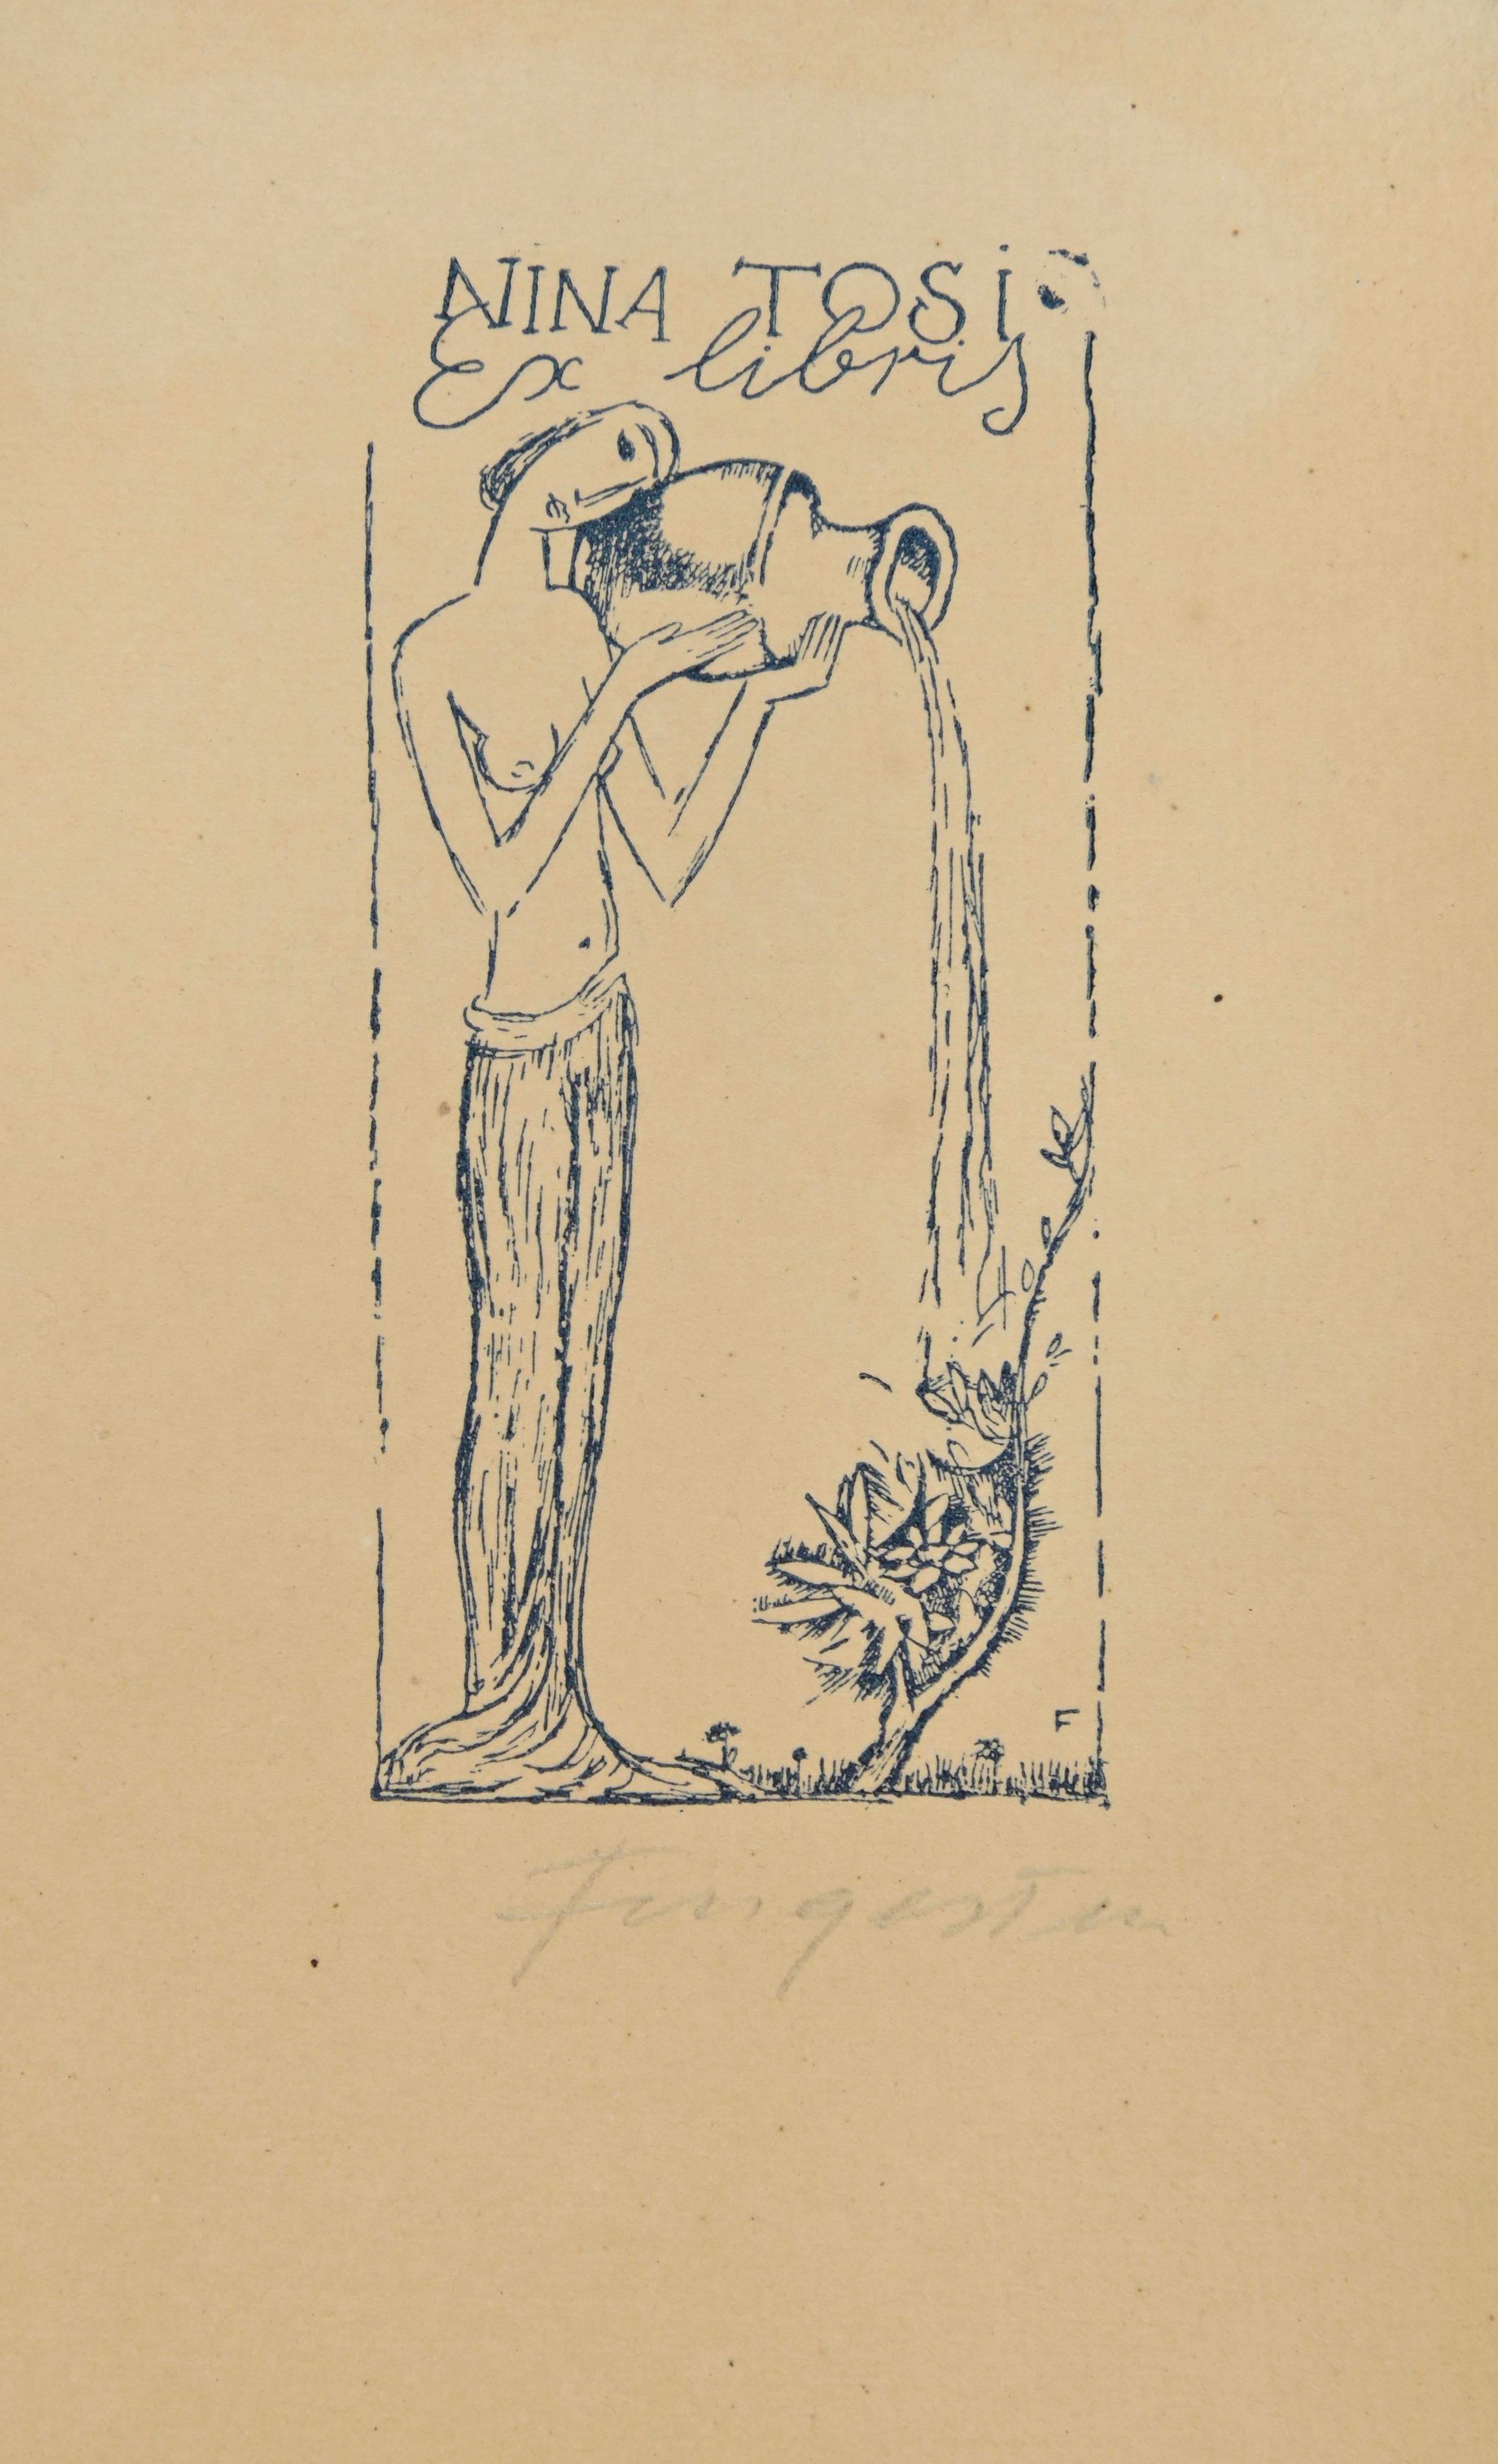 Ex Libris - Nina Tosi ist ein Holzschnitt, der von  Michel Fingesten.

Handsigniert am unteren rechten Rand.

Gute Bedingungen.

Michel Fingesten (1884 - 1943) war ein tschechischer Maler und Graveur jüdischer Herkunft. Er gilt als einer der größten